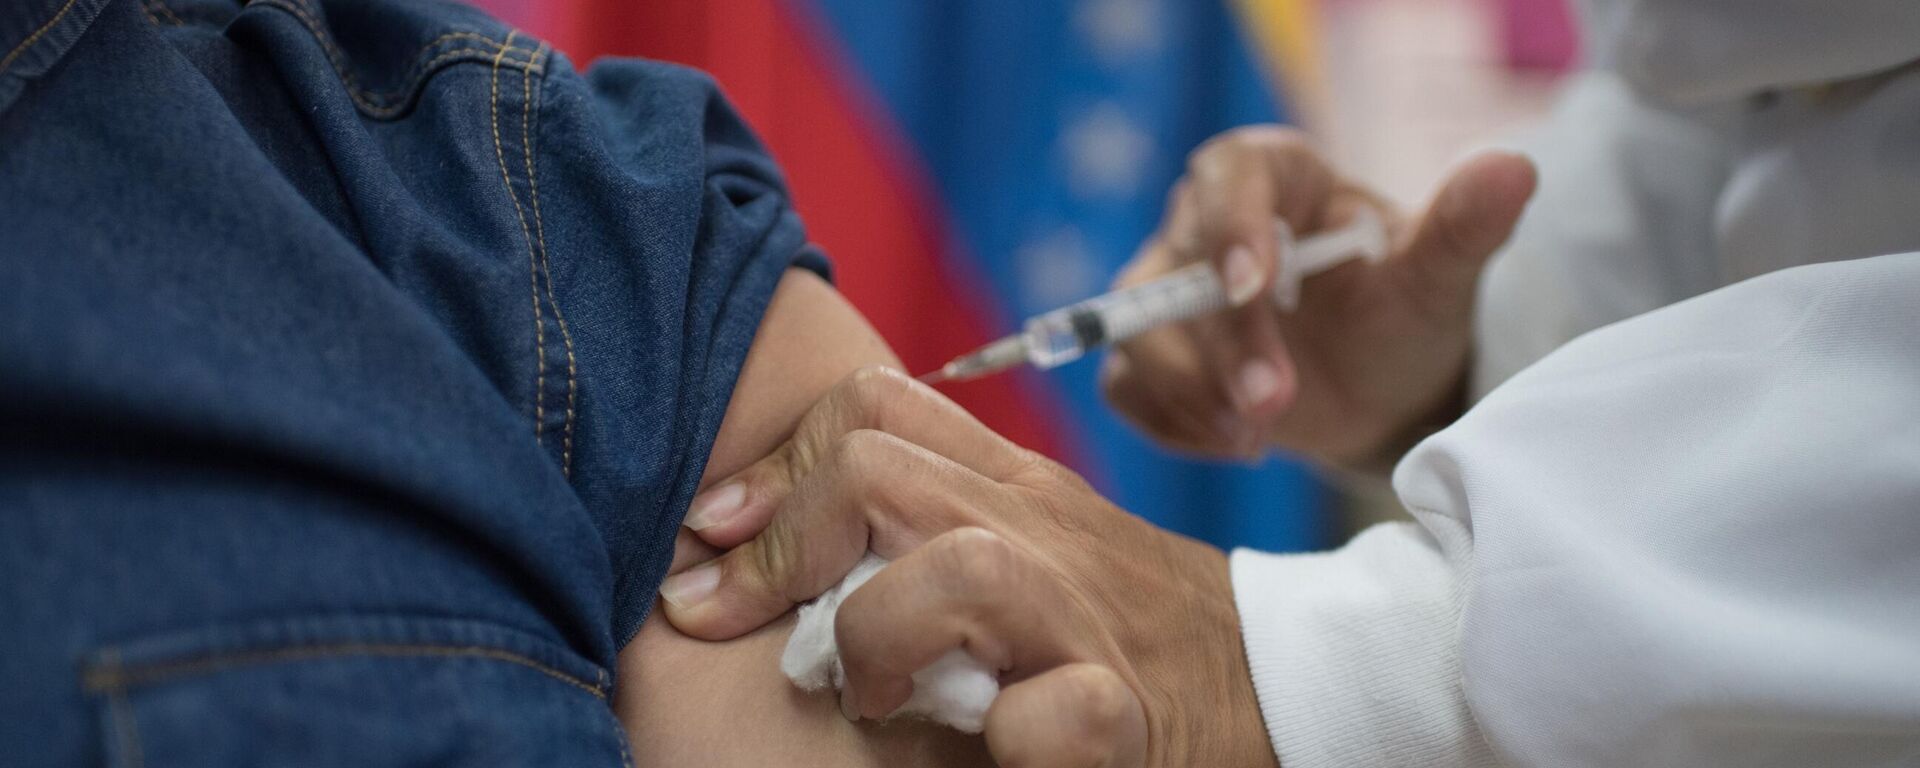 Un trabajador de la salud de Venezuela inyecta una dosis de Sputnik V a un paciente en Caracas, Venezuela - Sputnik Mundo, 1920, 13.12.2021